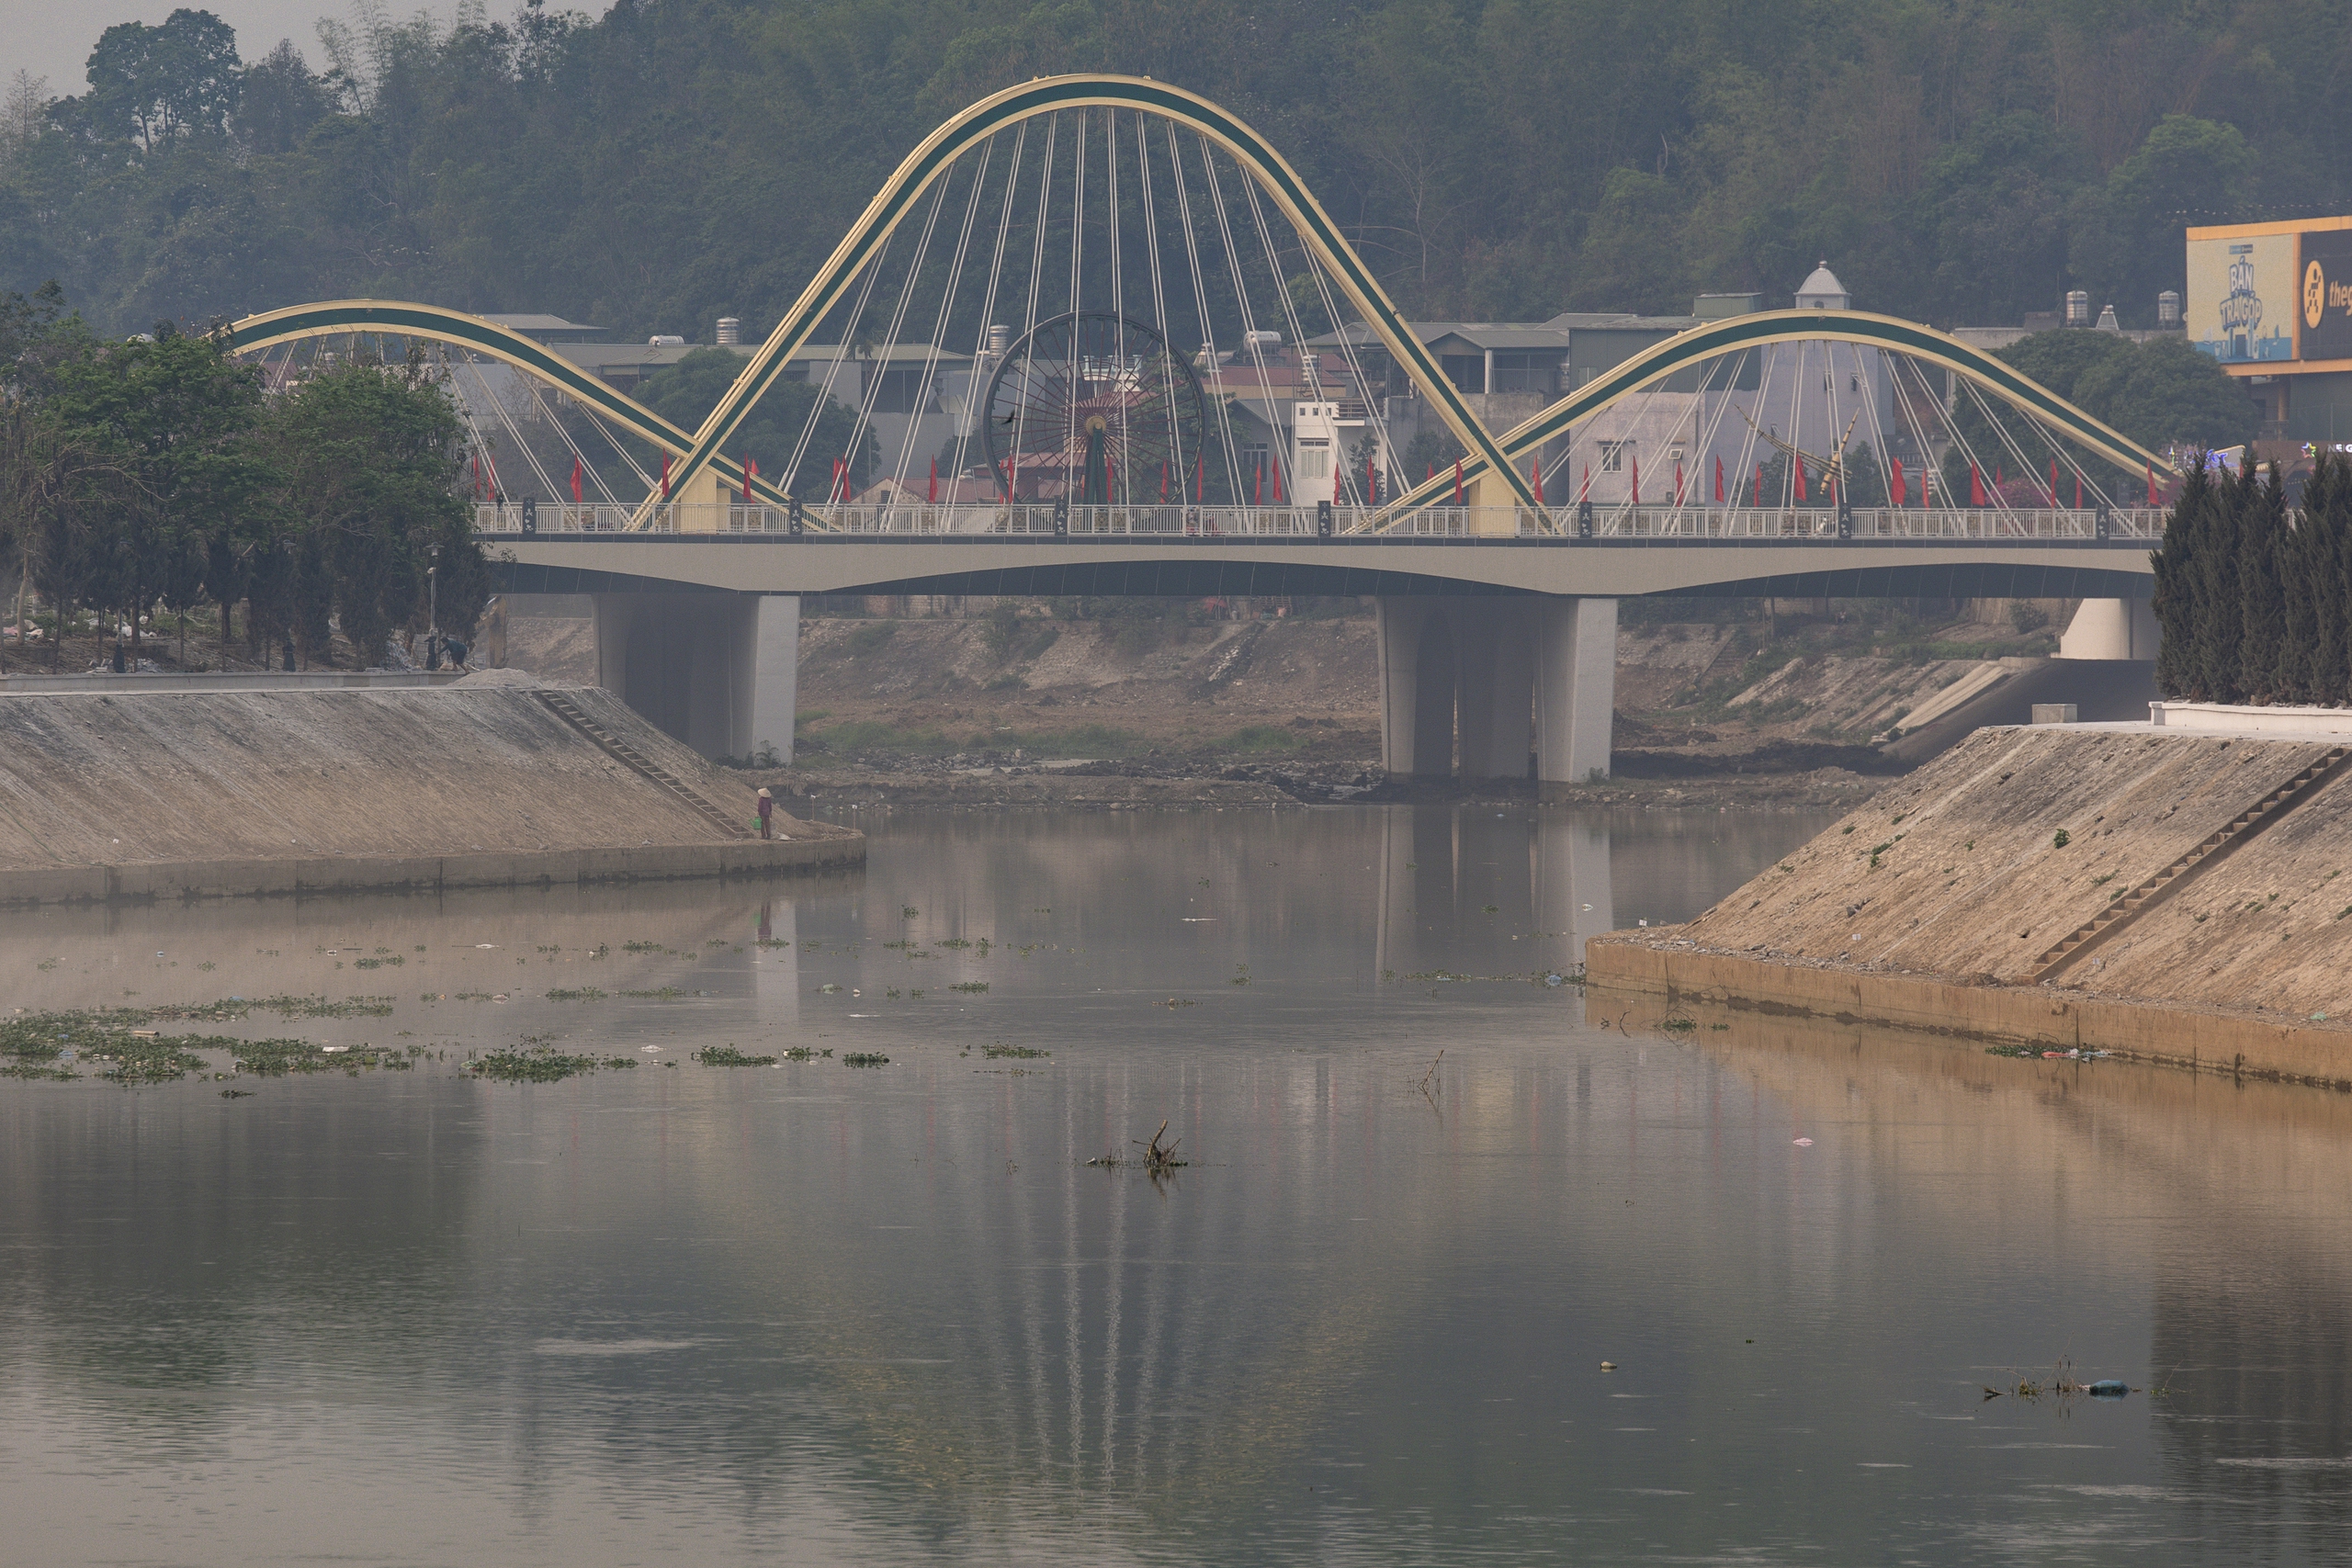 Công trình cầu Thanh Bình bắc qua sông Nậm Rốm mới được xây dựng và thông xe vào tháng 11.2023, cũng là công trình hoàn thiện để chào đón 70 năm Chiến thắng Điện Biên Phủ